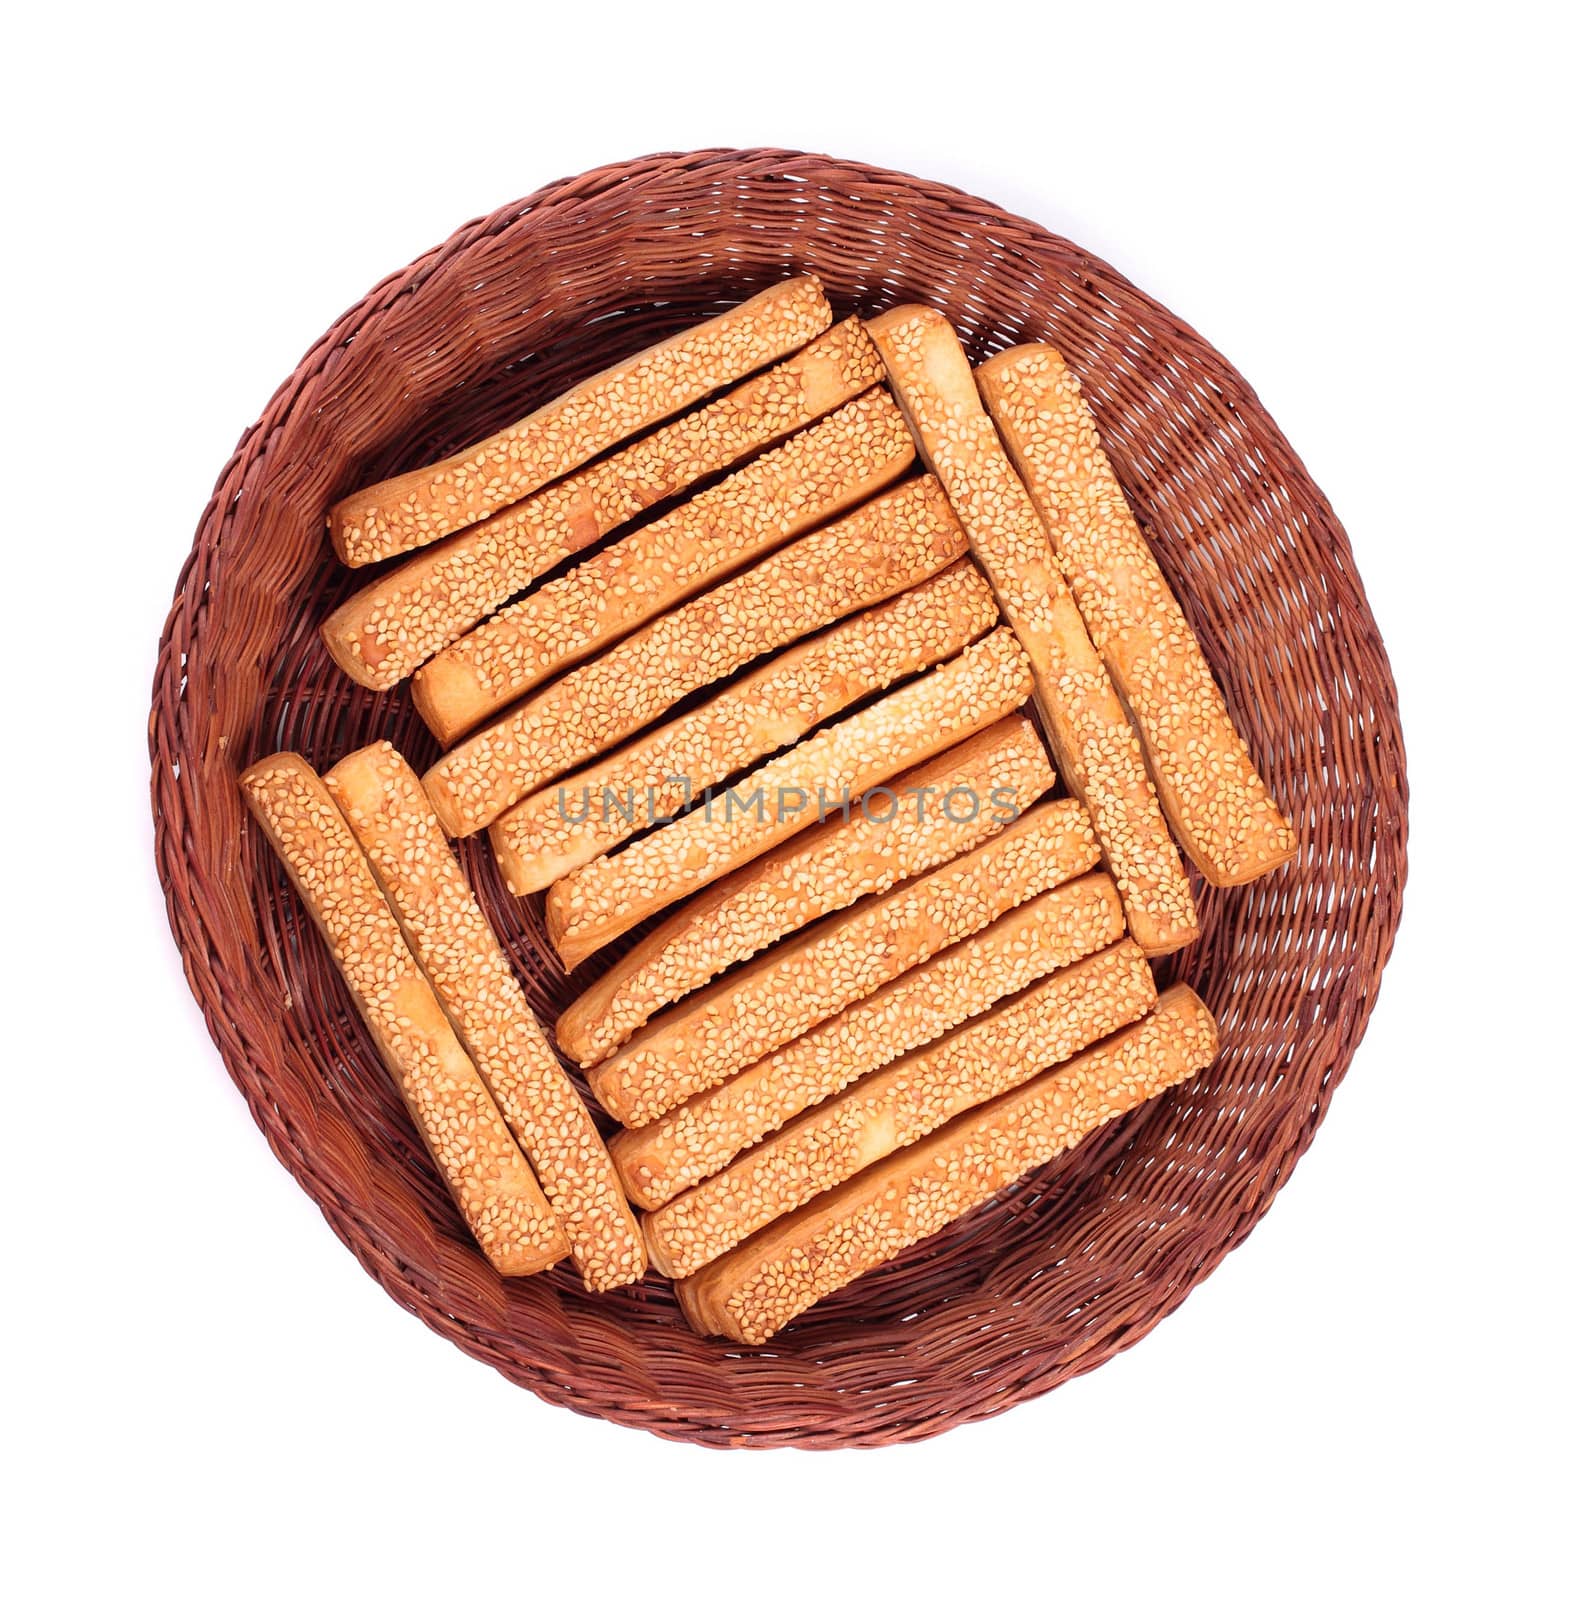 baking sticks in basket by shutswis